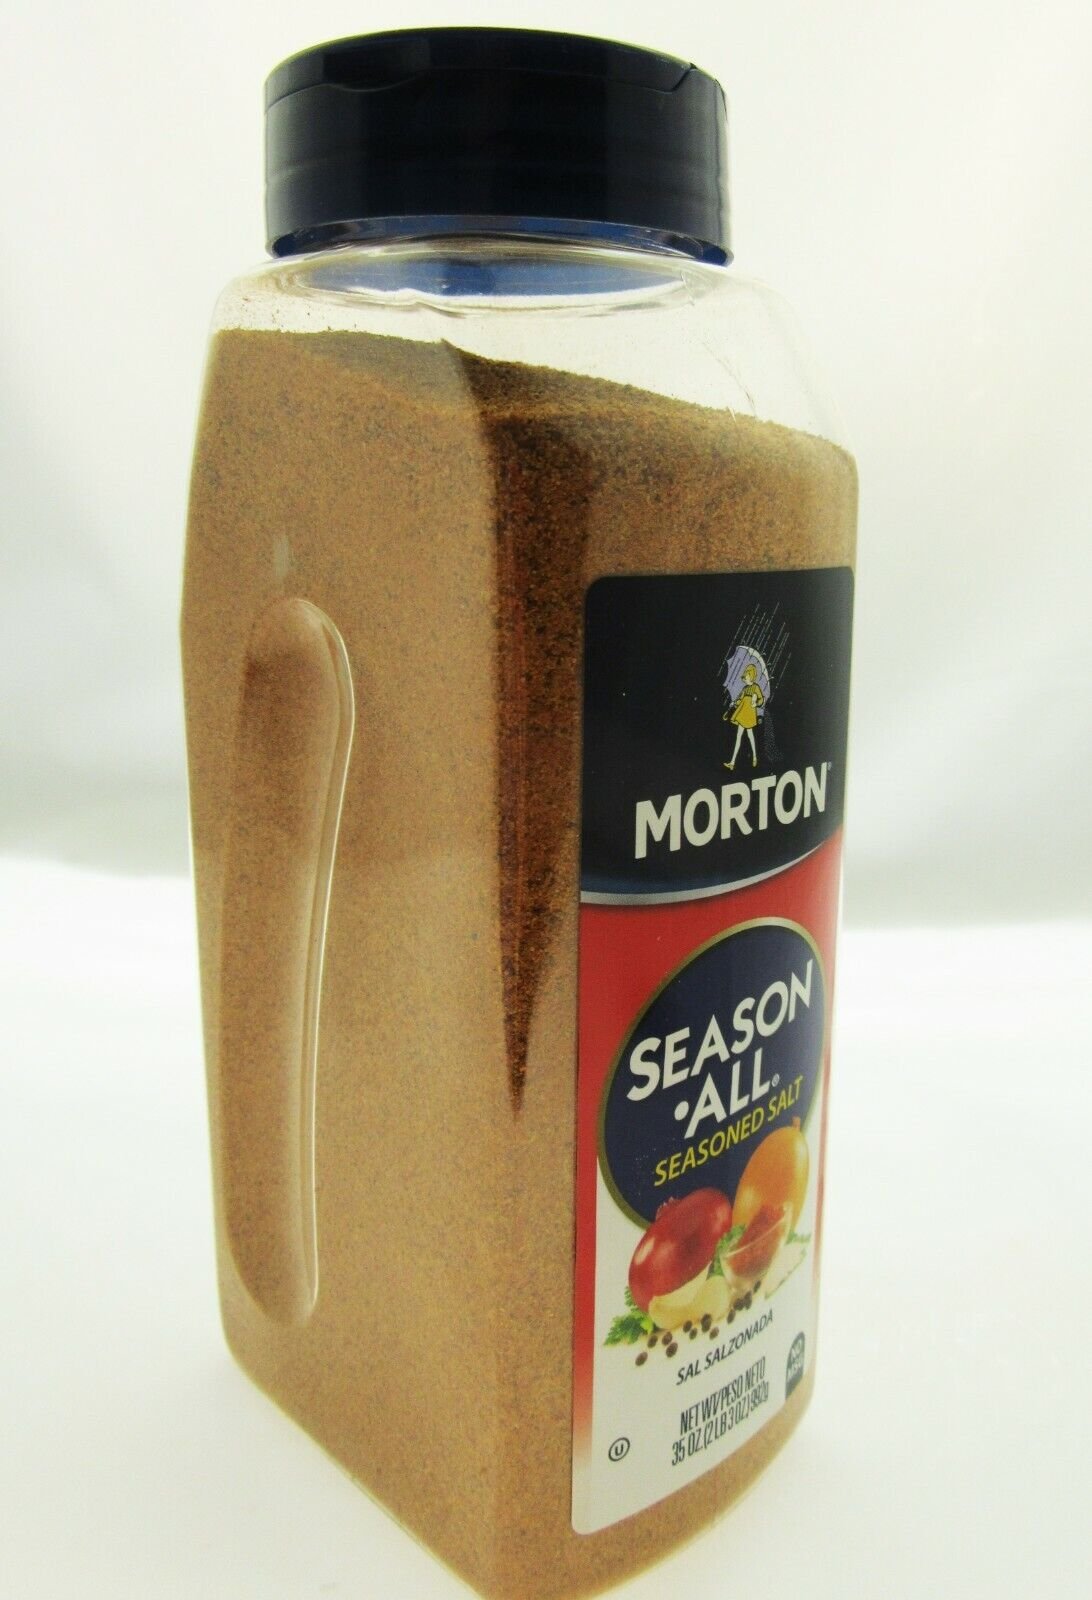 Morton Season All Seasoned Salt 2 Pack